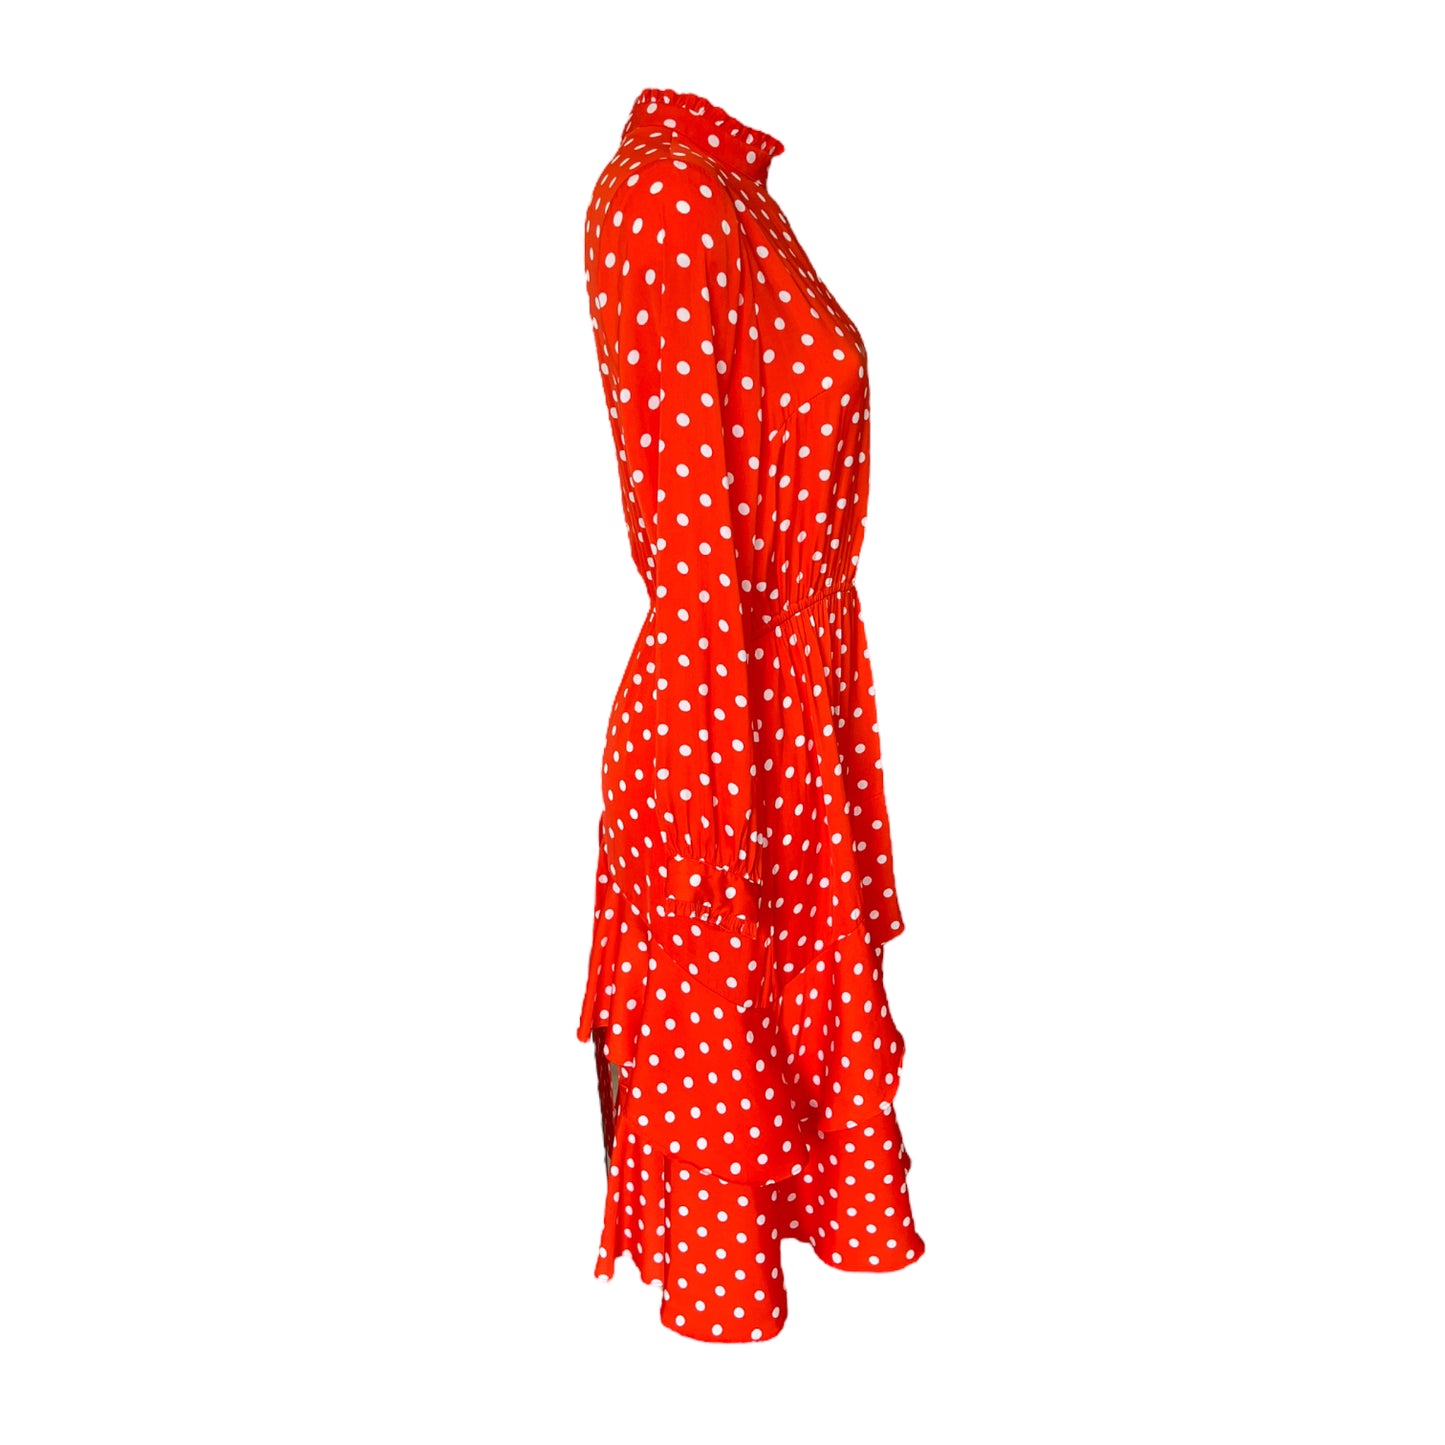 Essentiel Red Polka Dot Dress